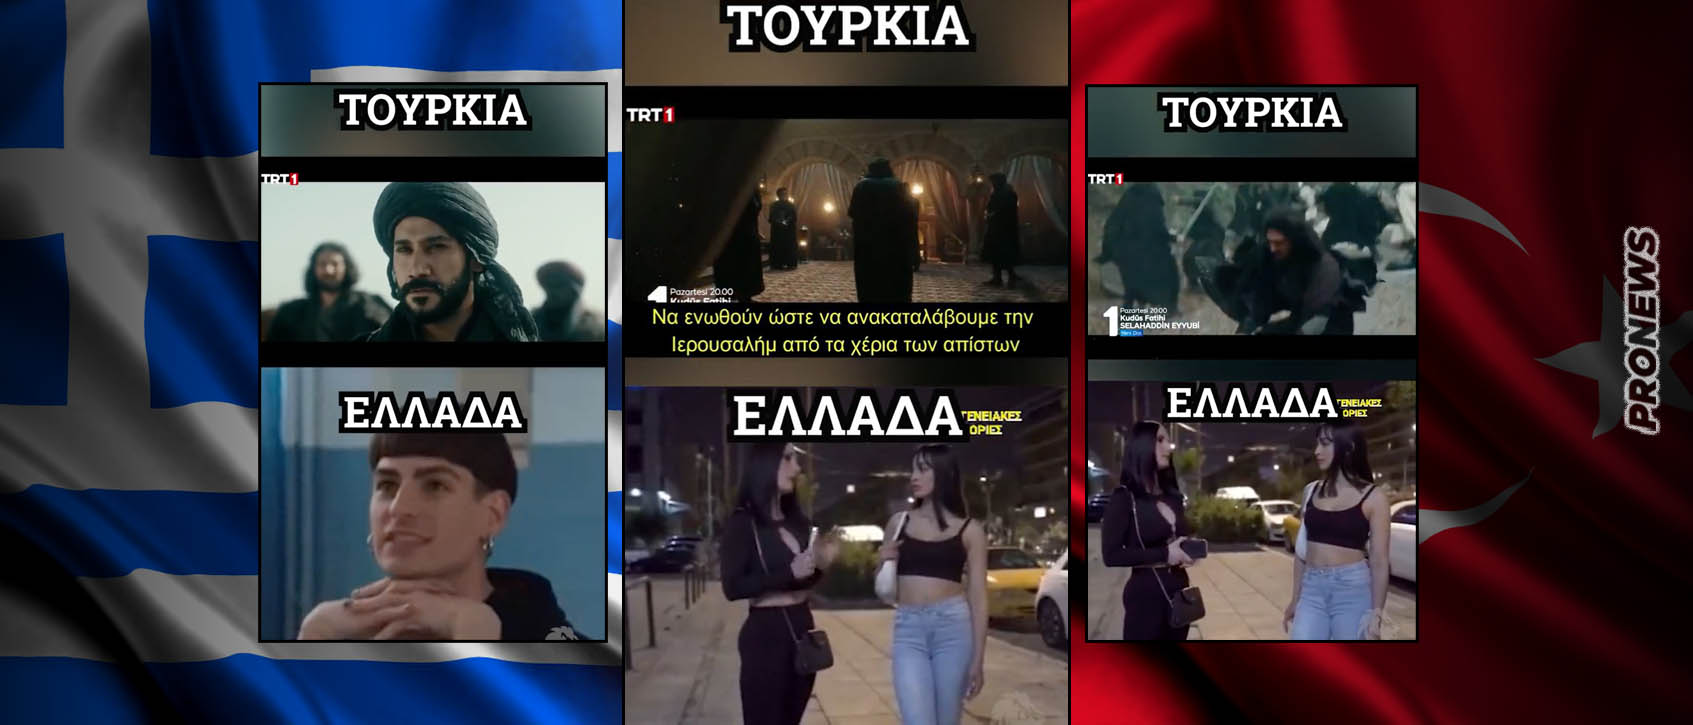 Ελλάδα και Τουρκία: Τα πρότυπα που προωθούν οι τηλεοπτικές σειρές στην ελληνική κοινωνία και τα αντίστοιχα πρότυπα στην τουρκική